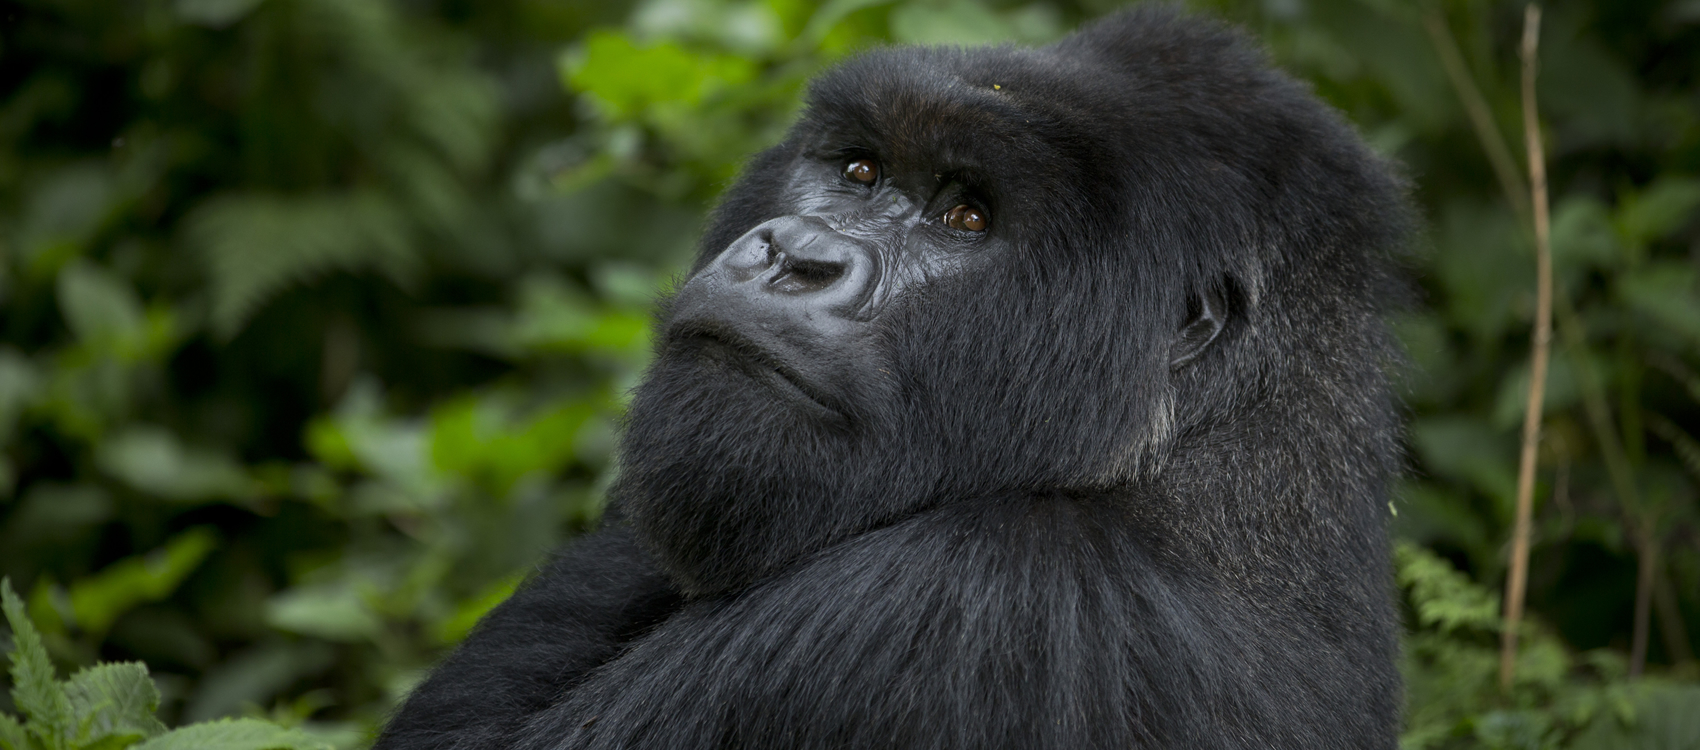 Safari de gorilas en Uganda con recorrido por la vida salvaje